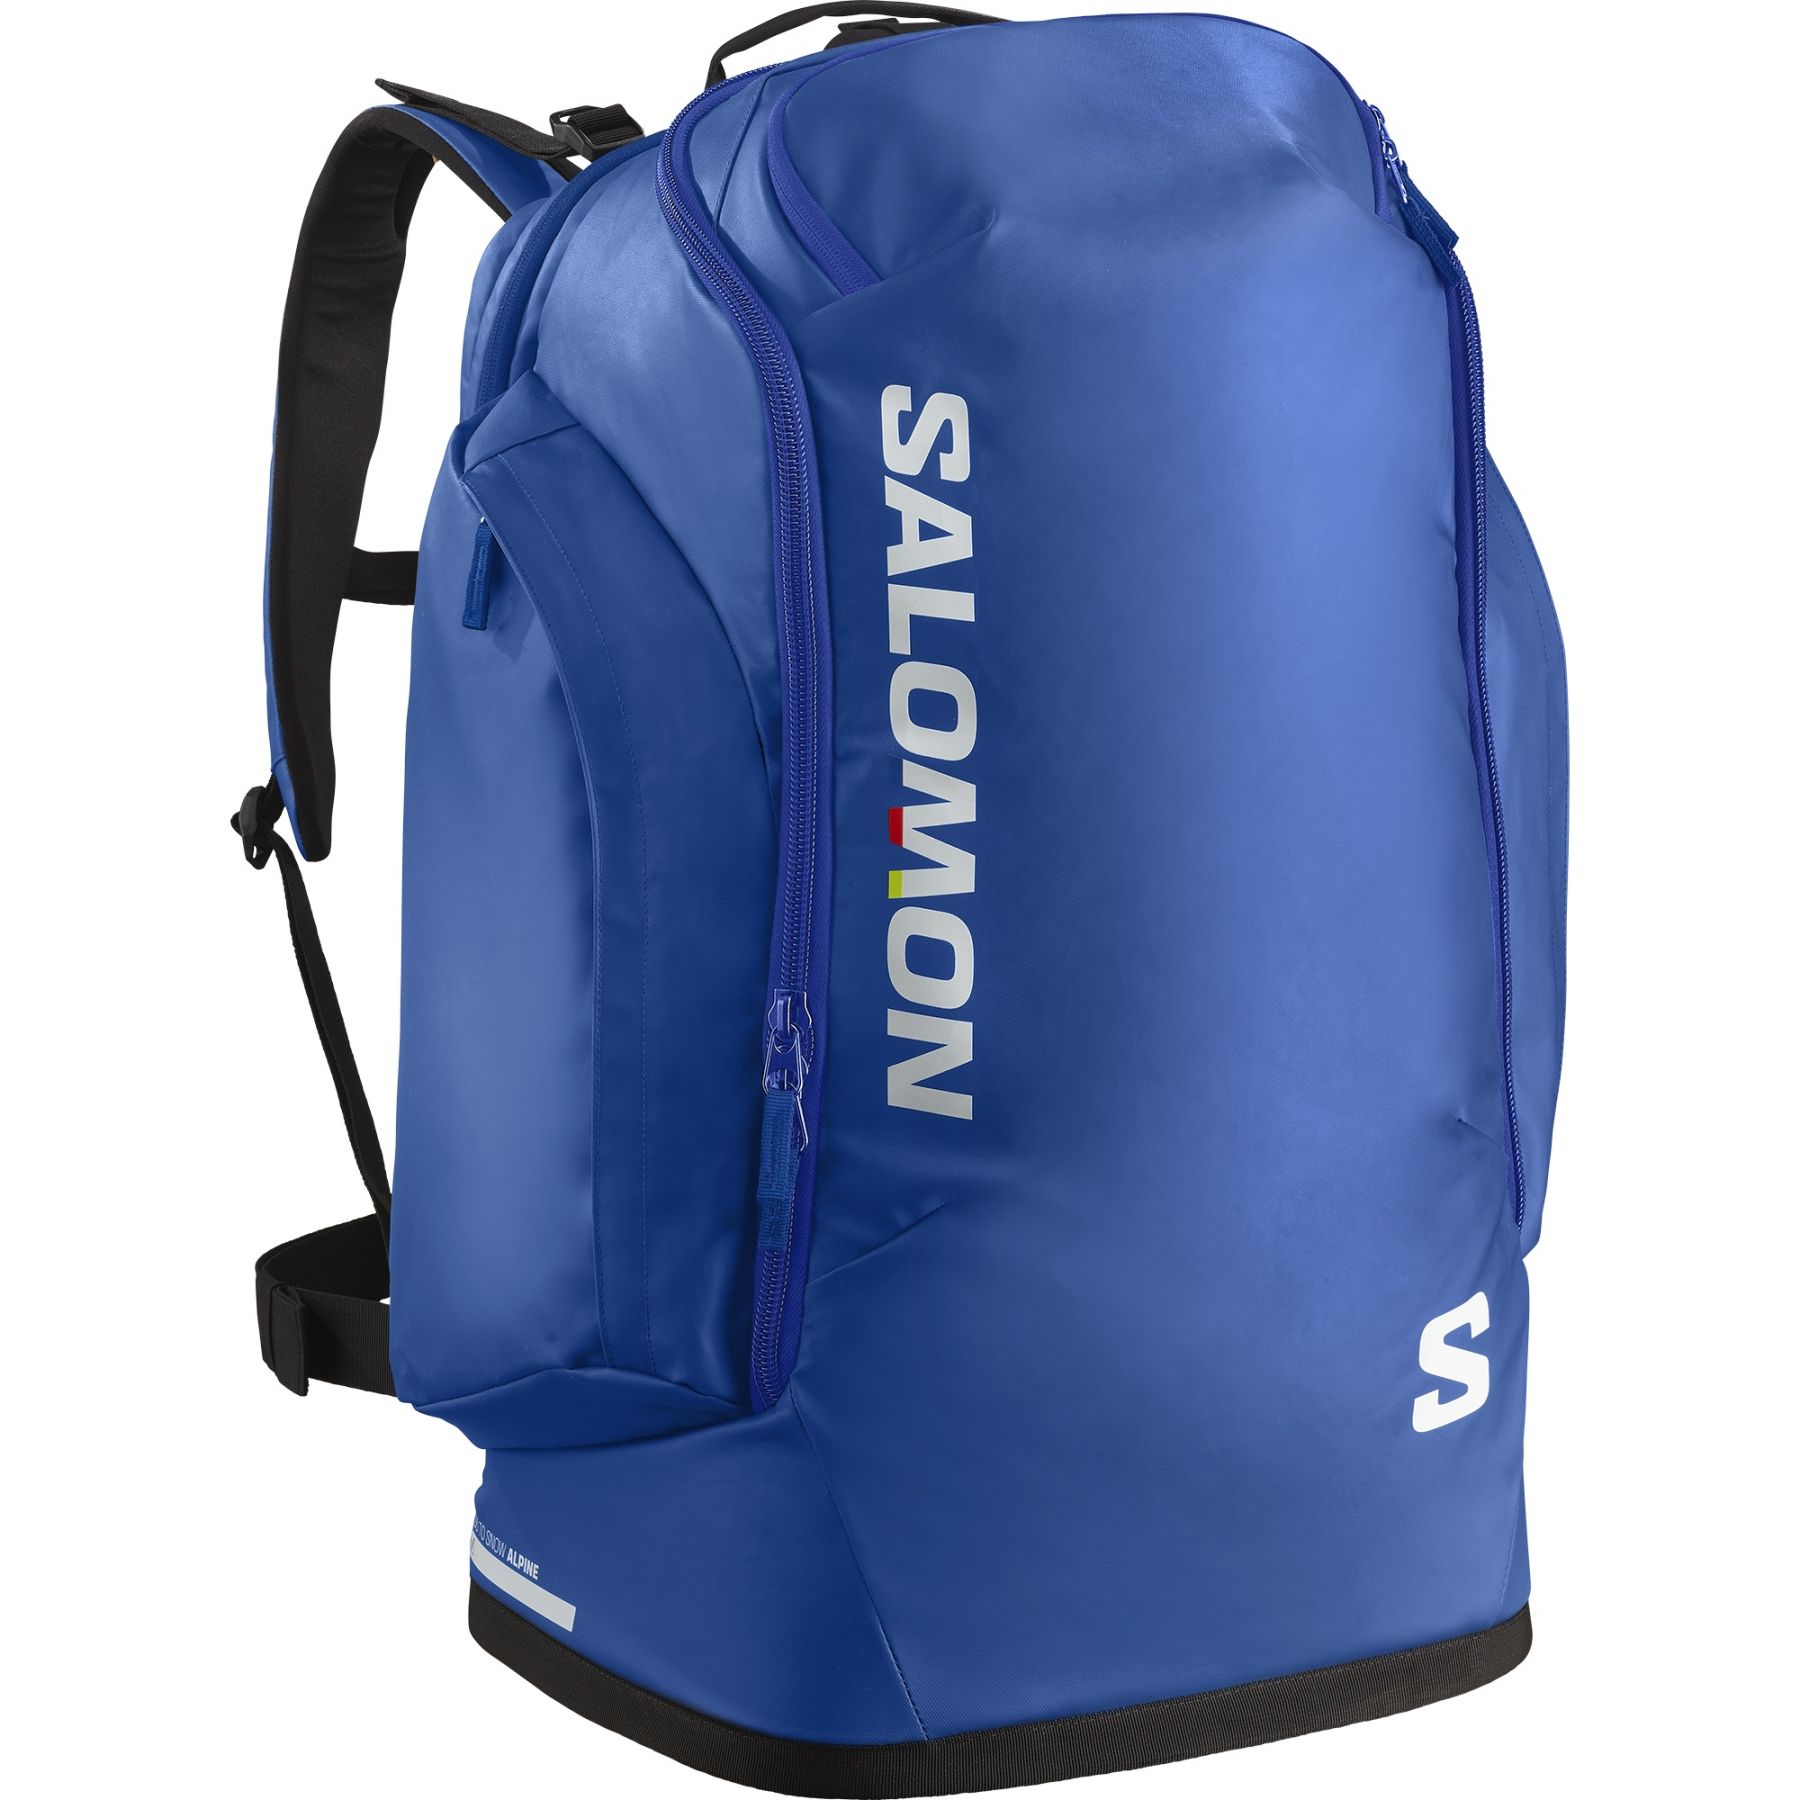 Brug Salomon Go To Snow, 50L, rygsæk, blå til en forbedret oplevelse